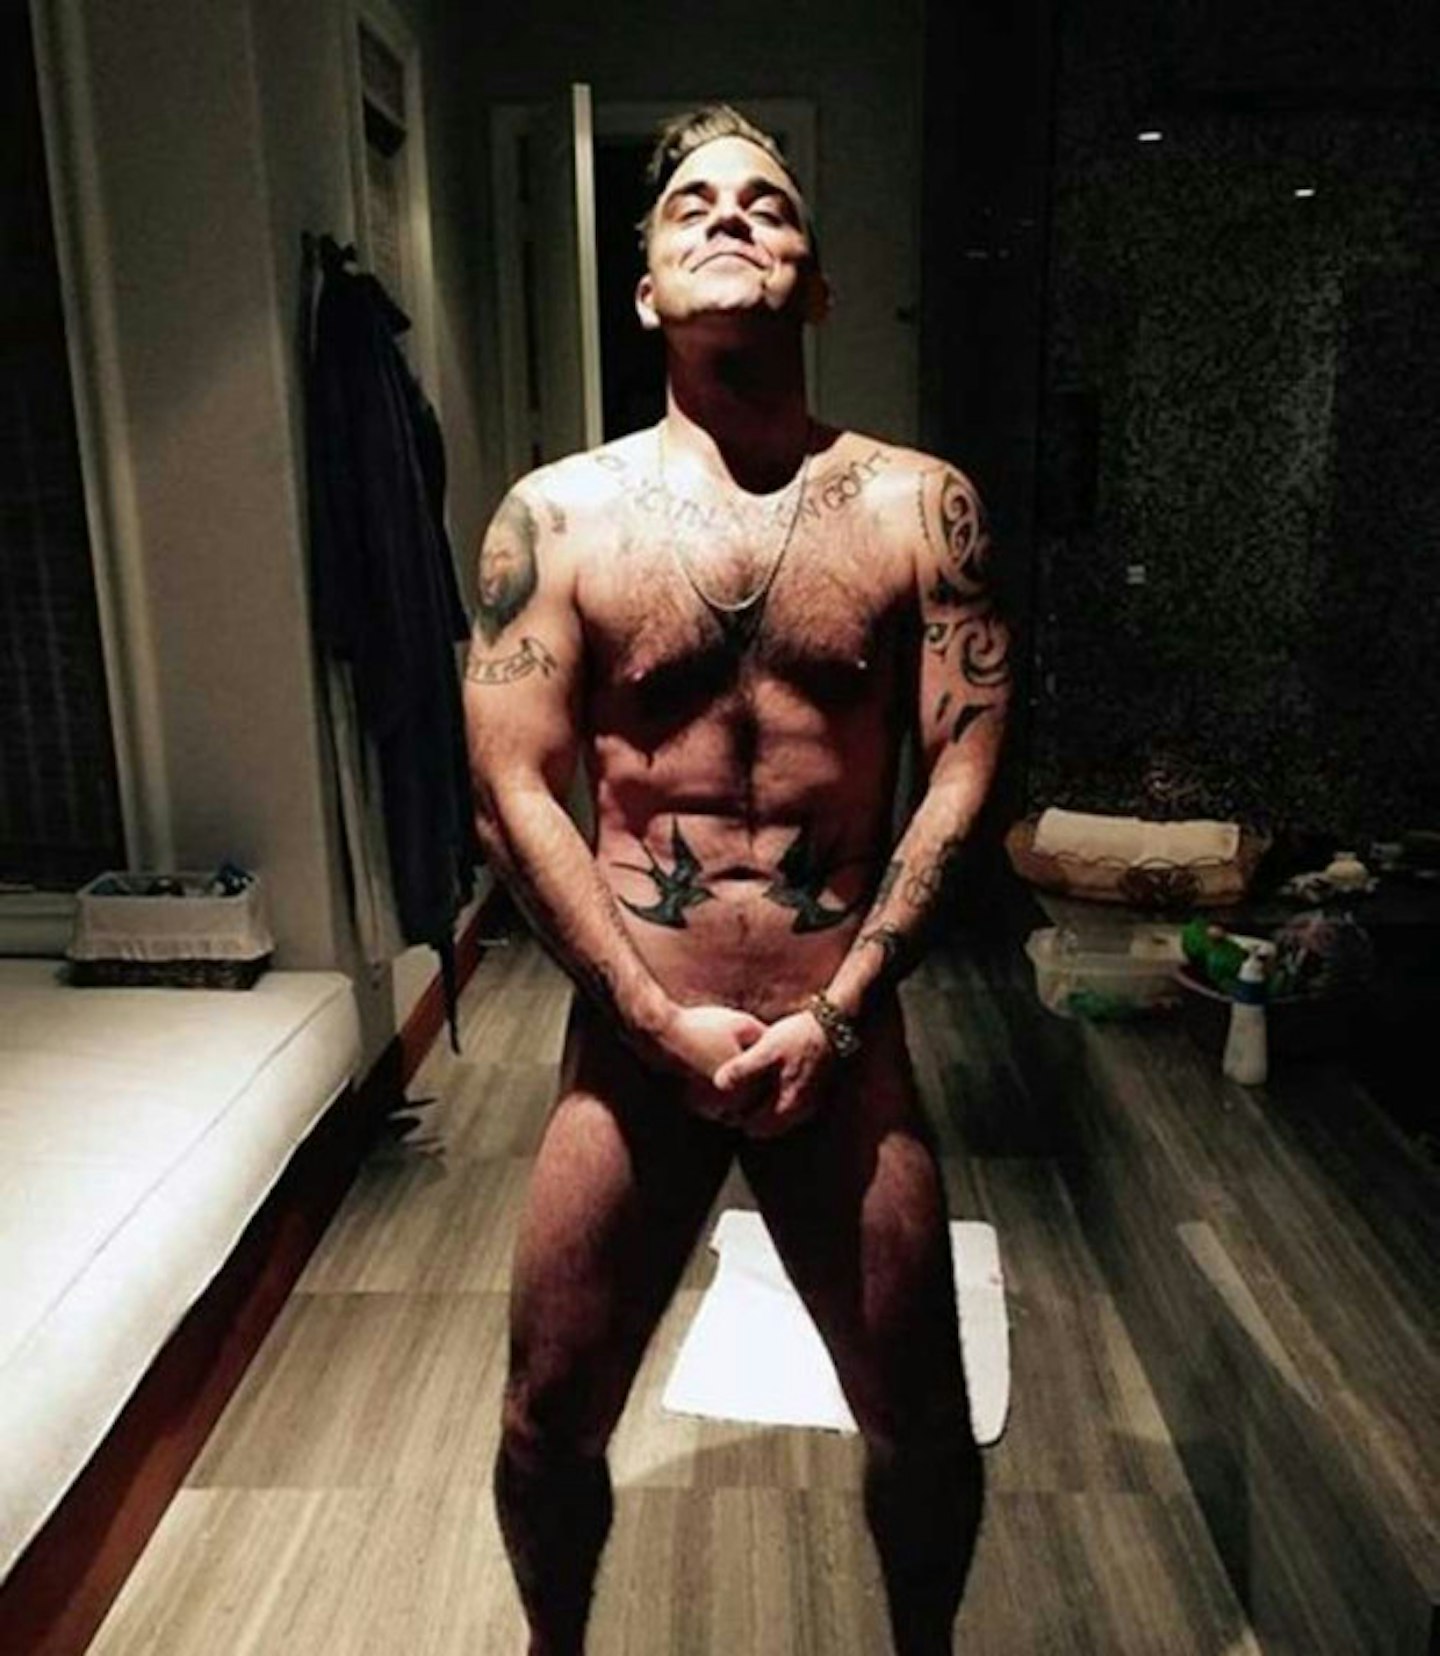 24. Robbie Williams